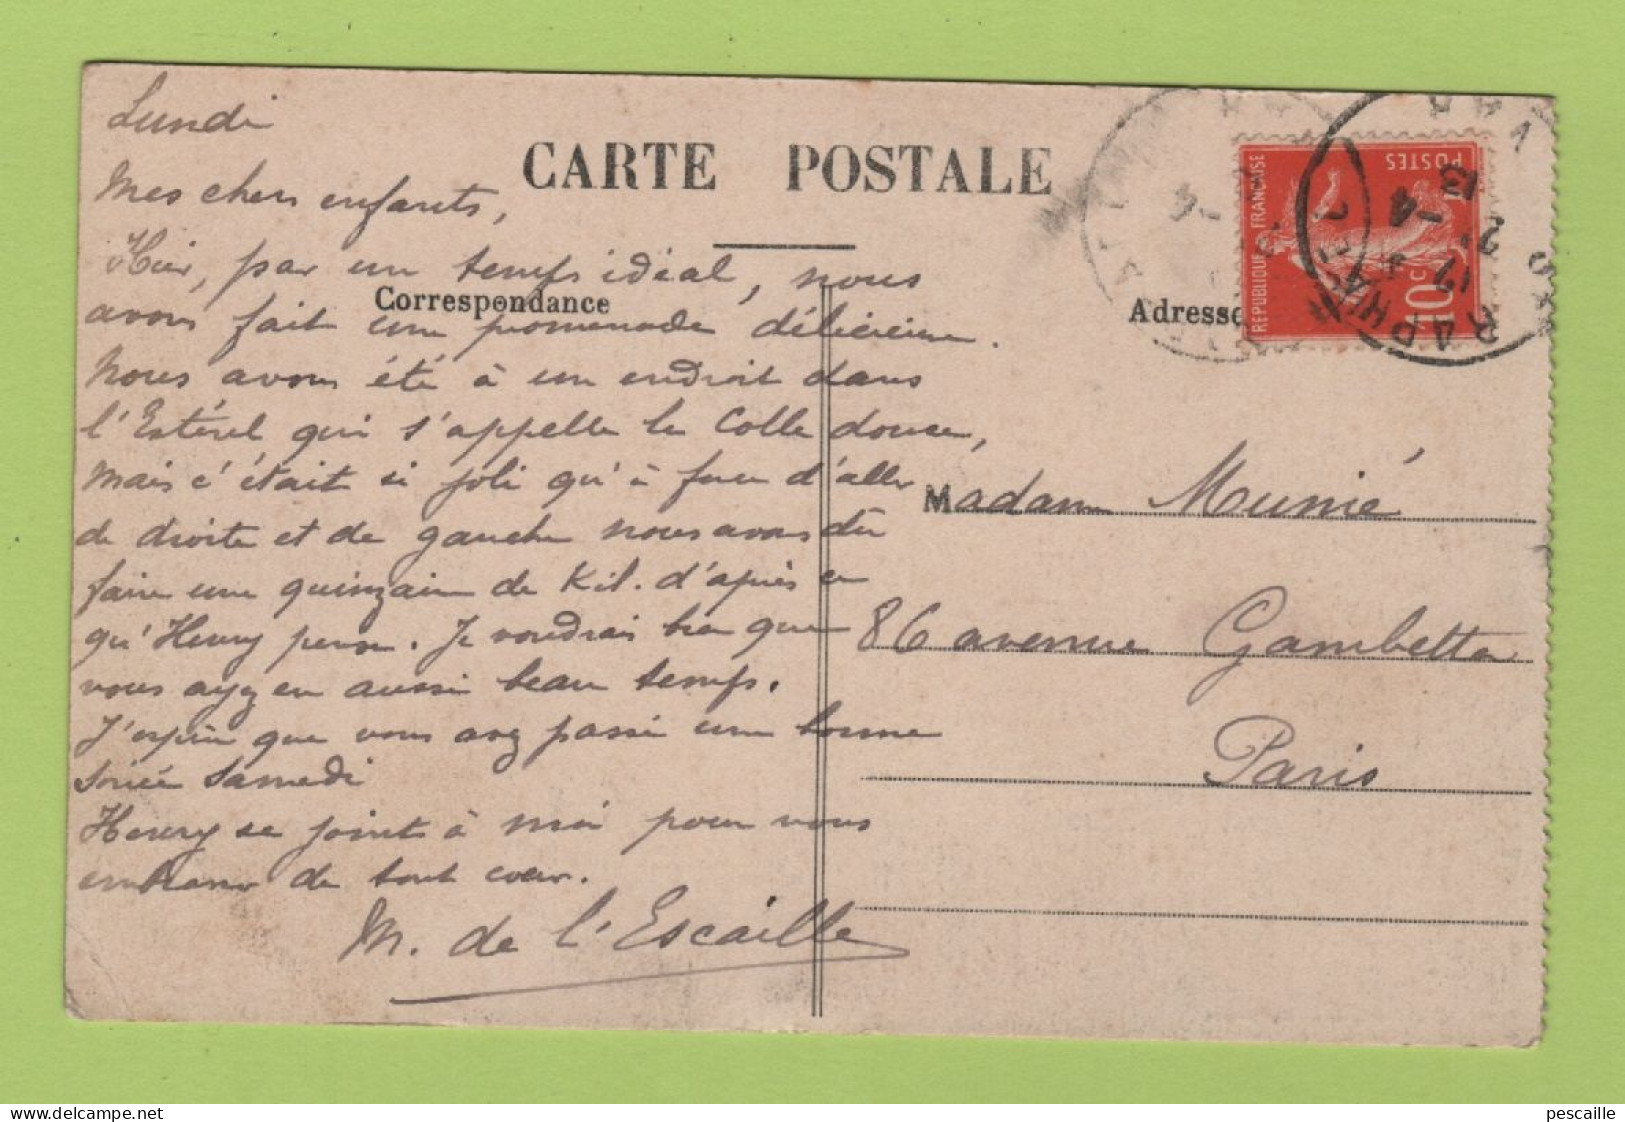 83 VAR - CP SAINT RAPHAEL - LE LION DE TERRE ET LE LION DE MER - CLICHE PAPETERIE PARISIENNE N° 14 - CIRCULEE EN 1913 - Saint-Raphaël